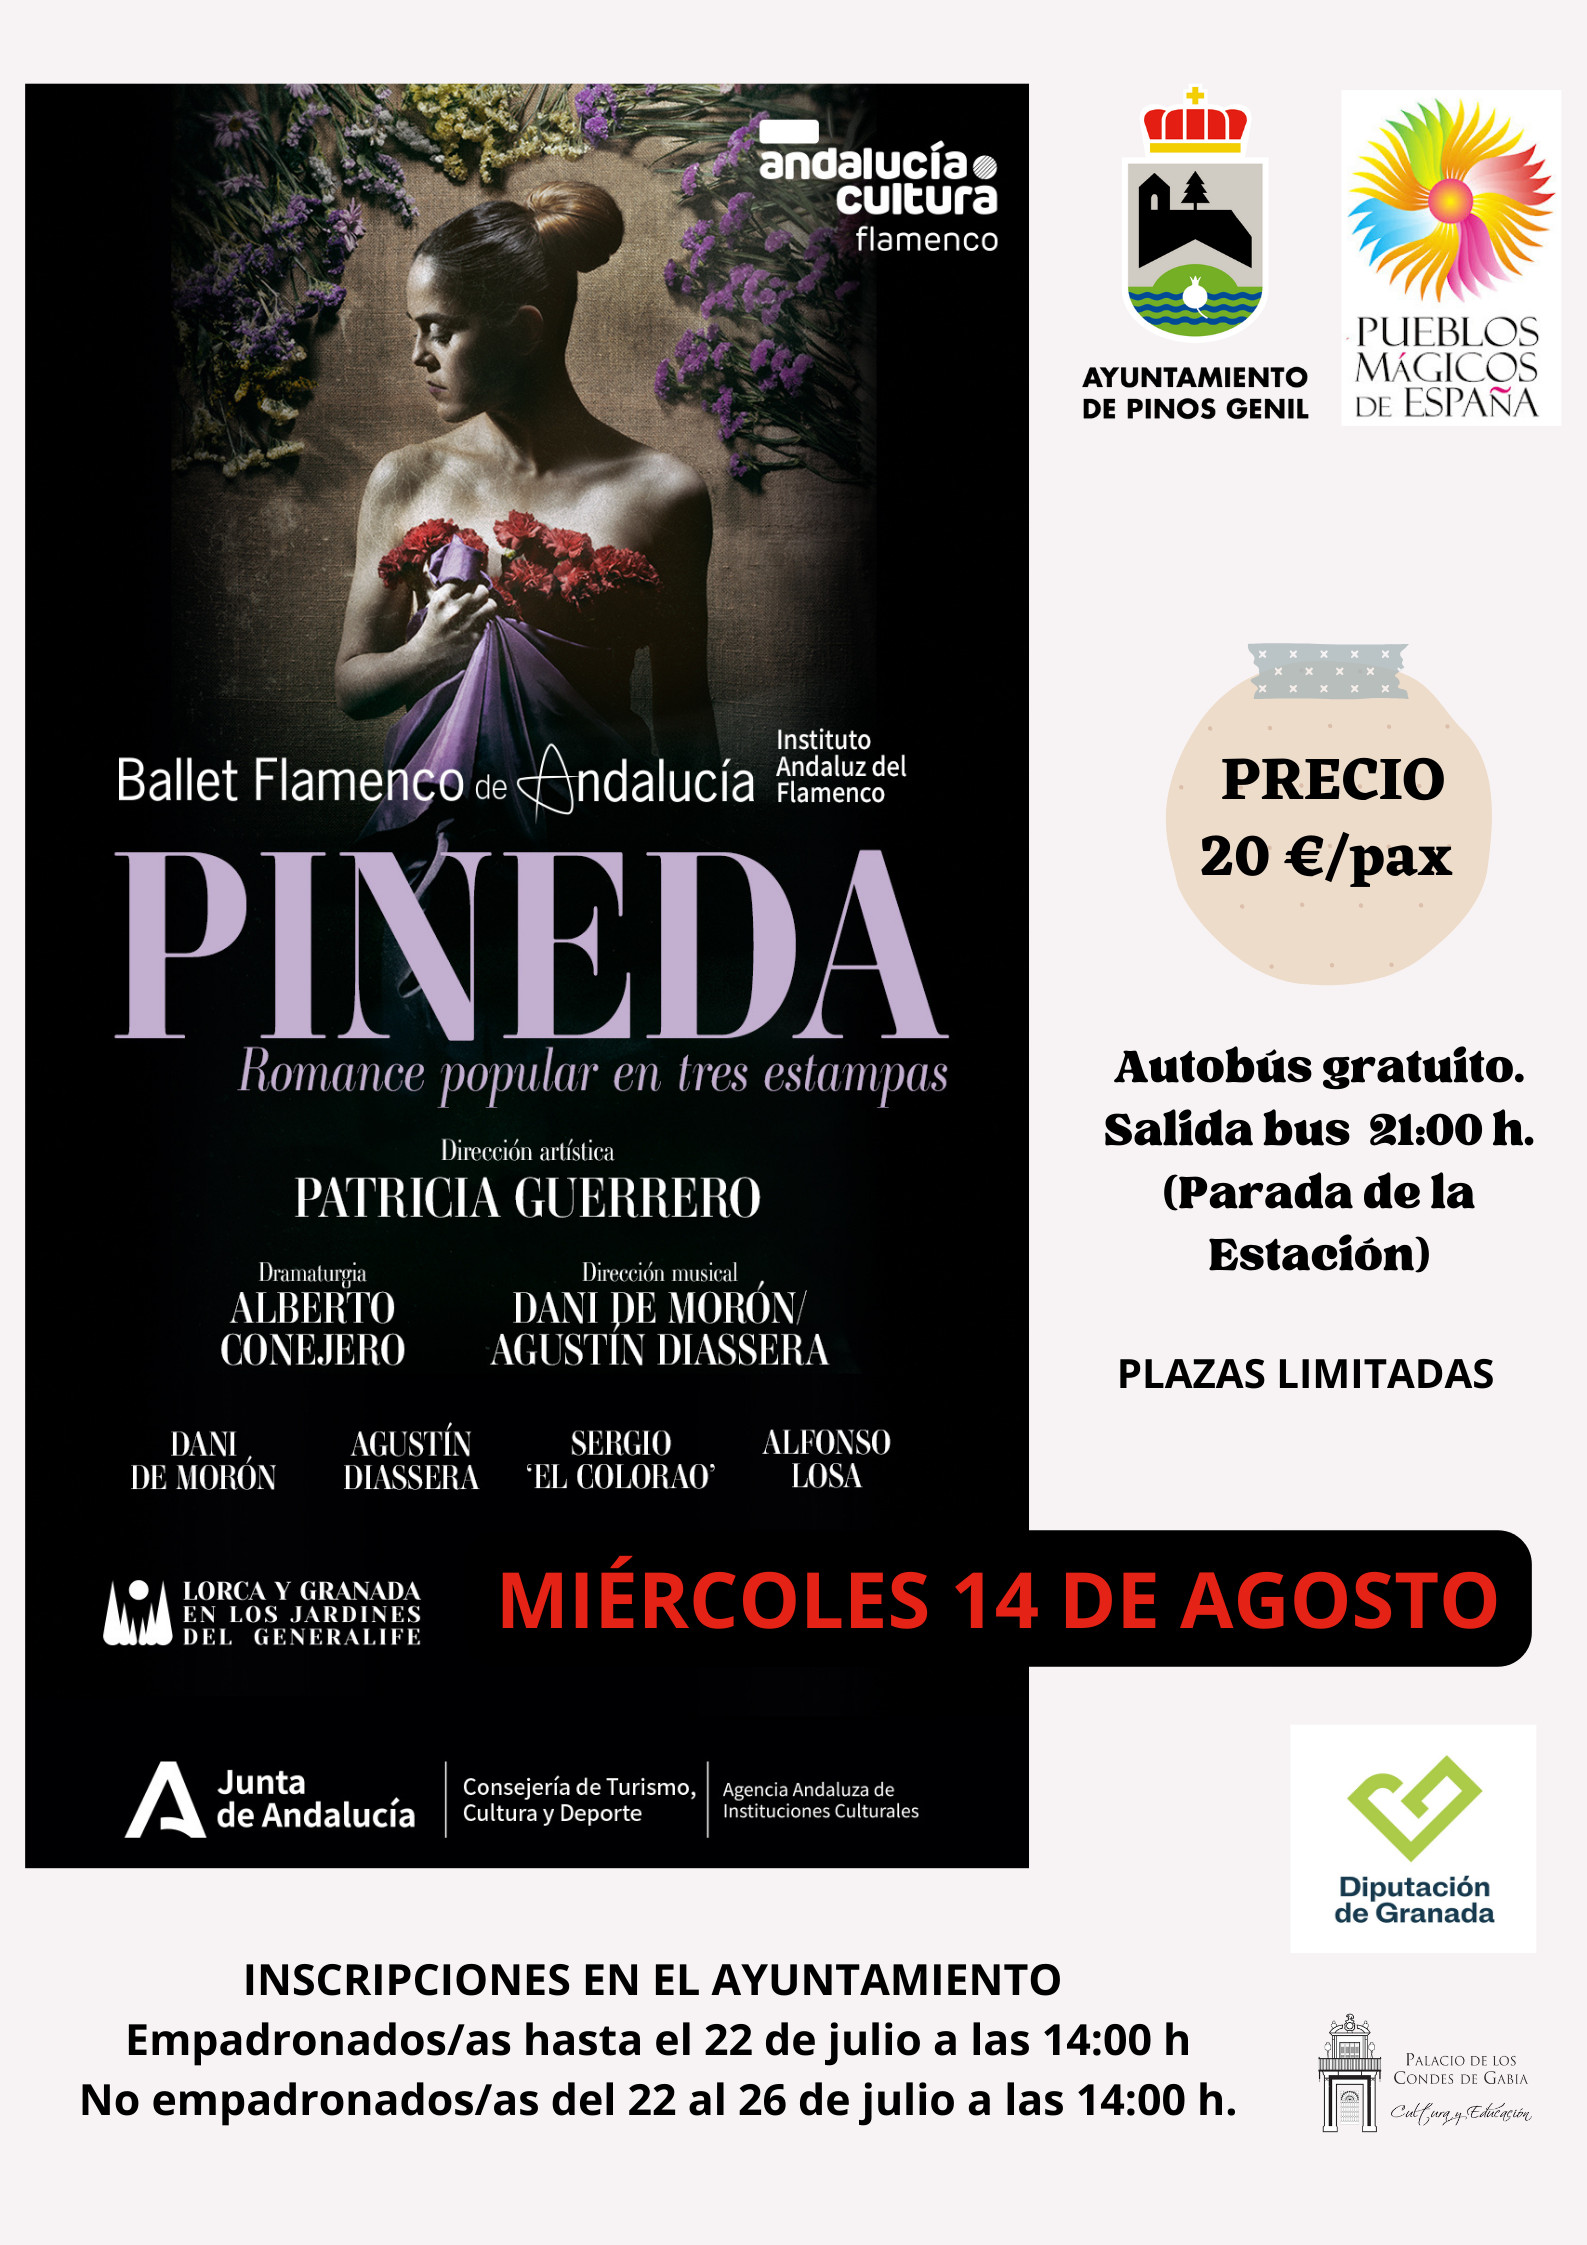 Pineda, Romance Popular en tres etapas. Ballet Flamenco de Andalucía.